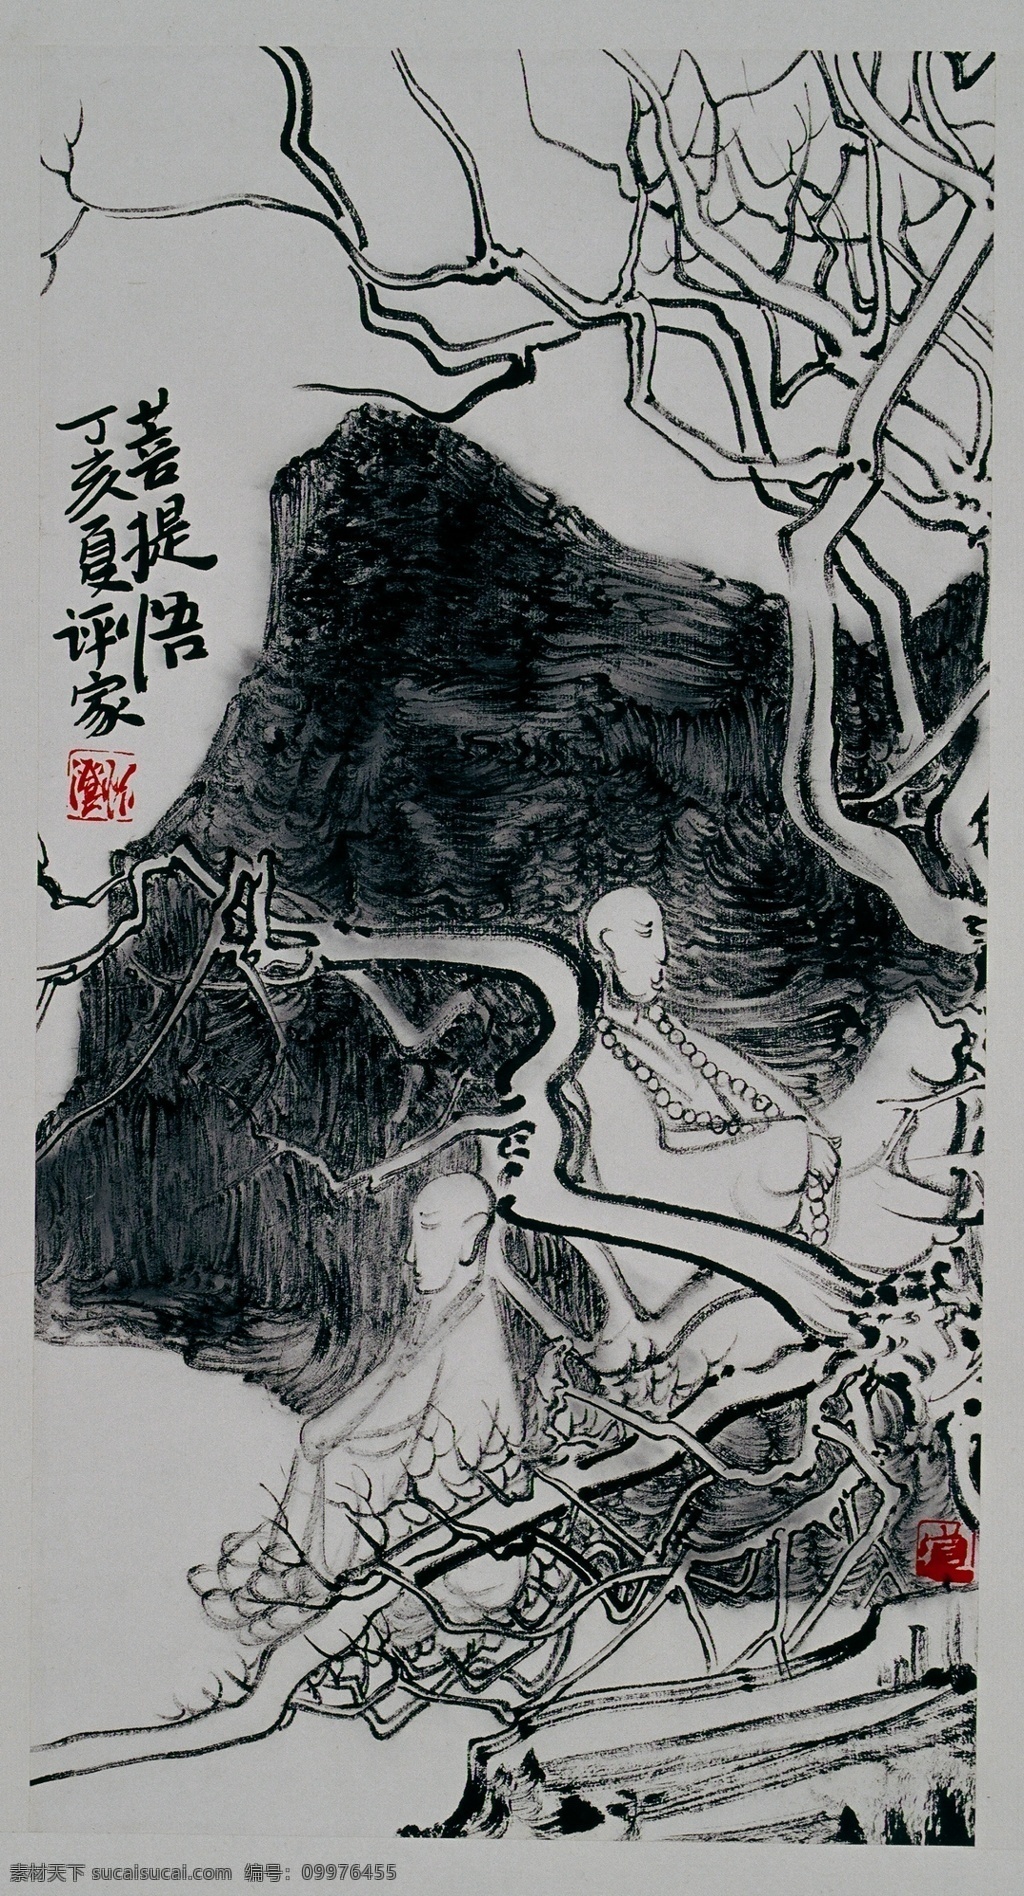 人物画 国画 设计素材 人物画篇 中国画篇 书画美术 灰色